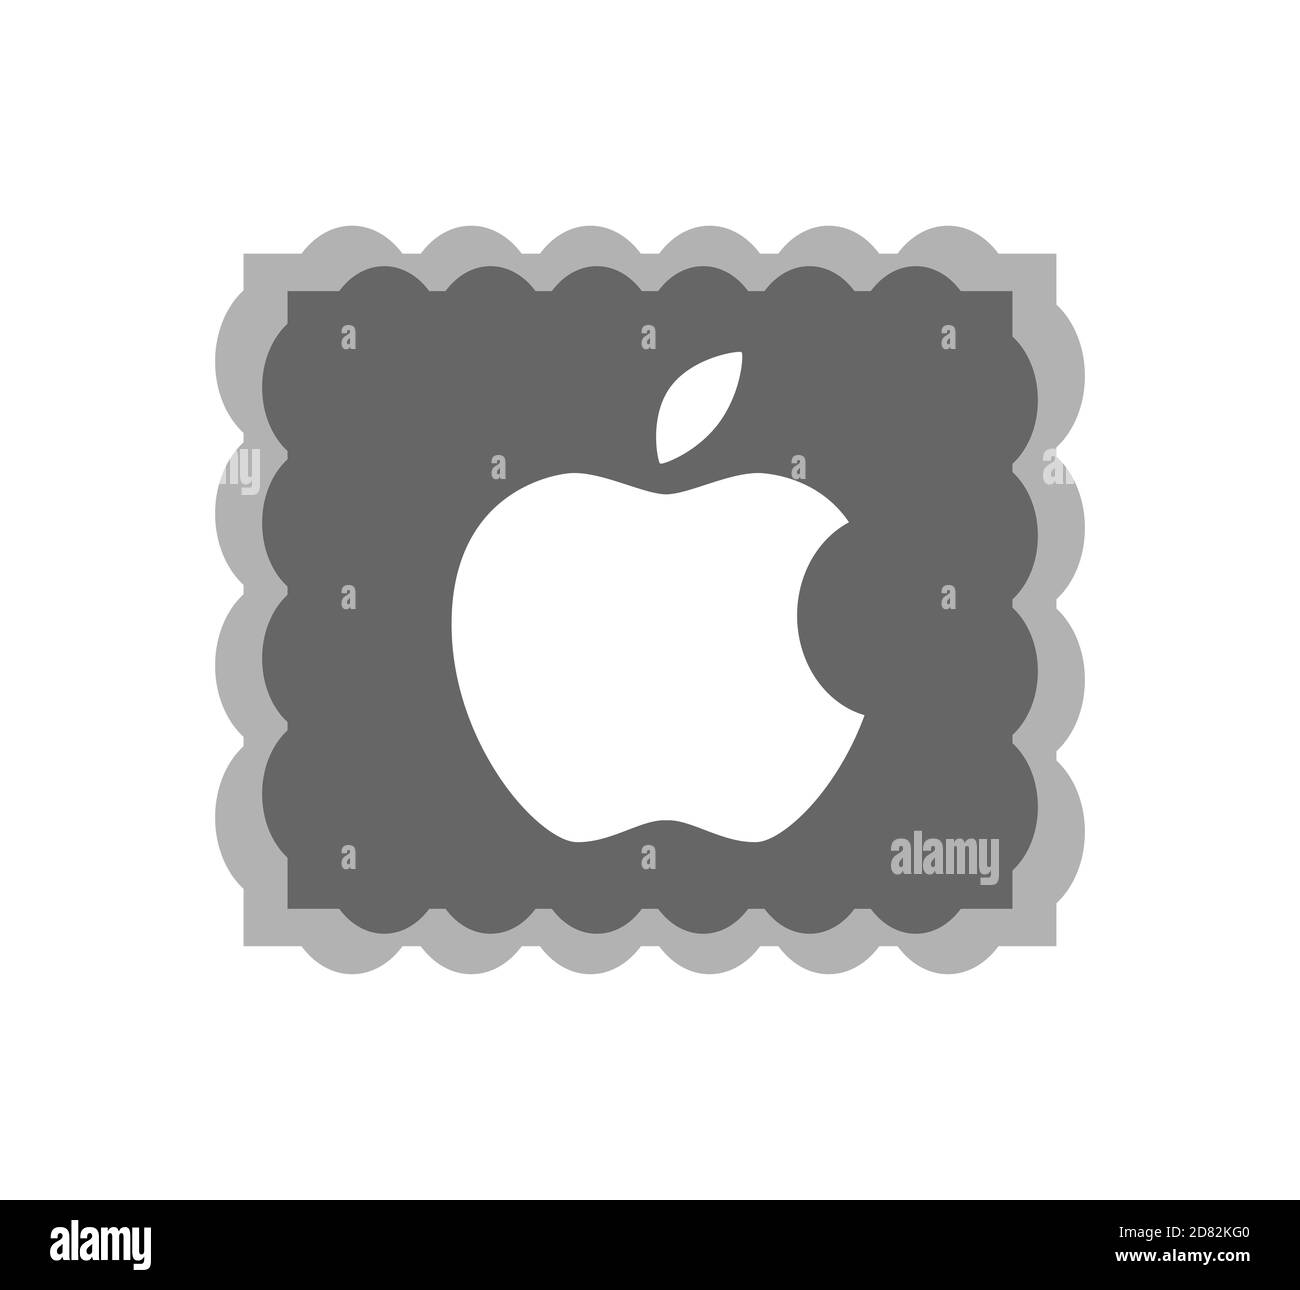 Logo Apple. Apple est une société américaine qui développe et vend des produits électroniques et des ordinateurs grand public. Logo Apple . Kharkiv, Ukraine - juin 2020 Banque D'Images